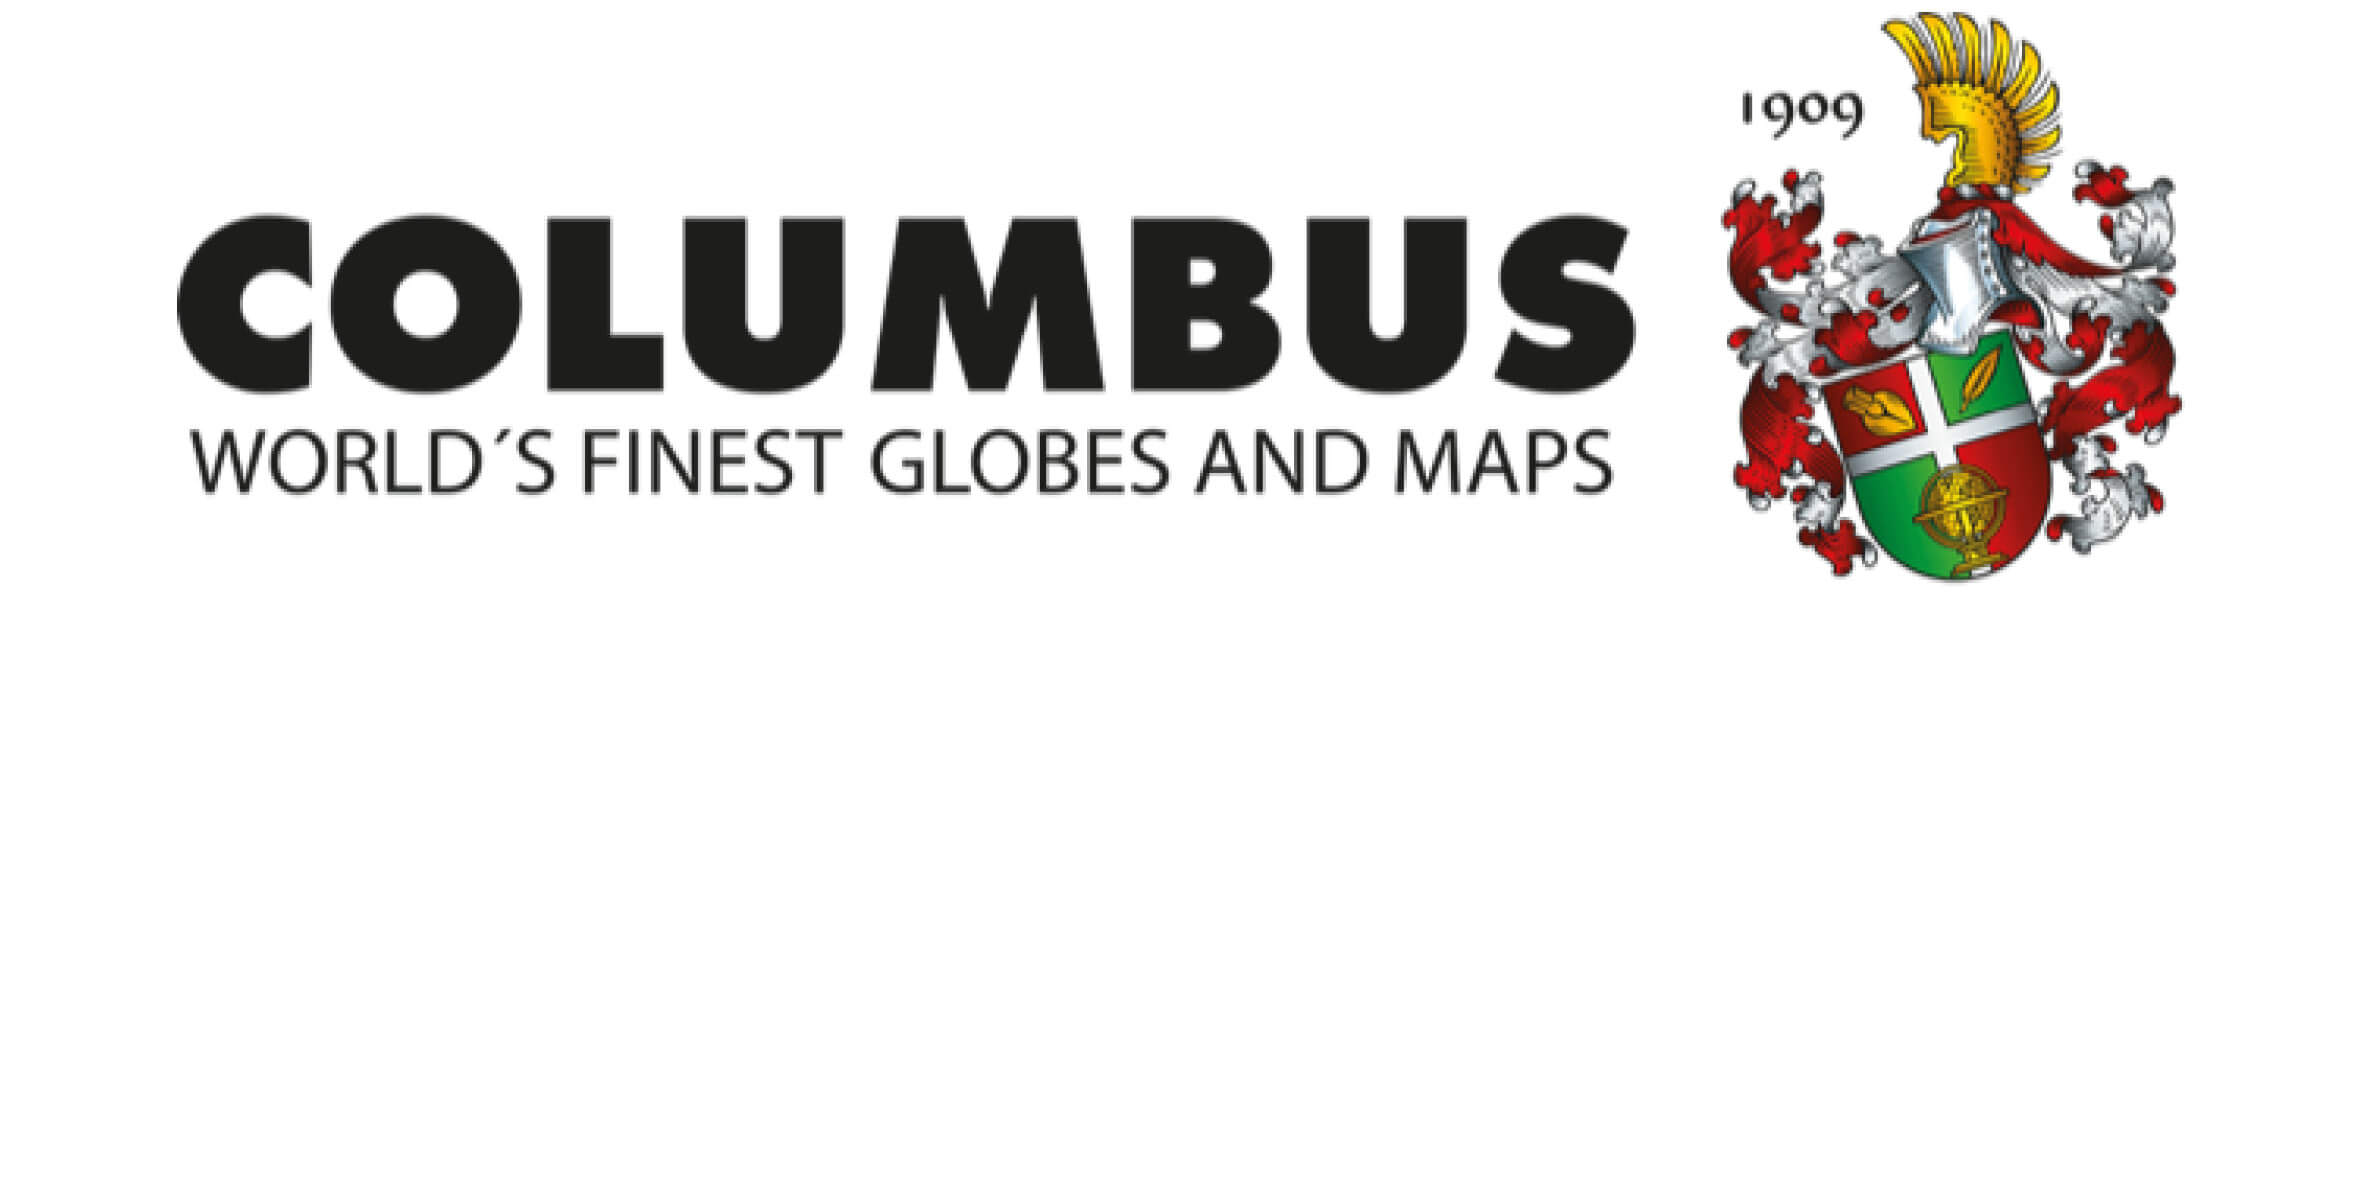 Columbus Clobus